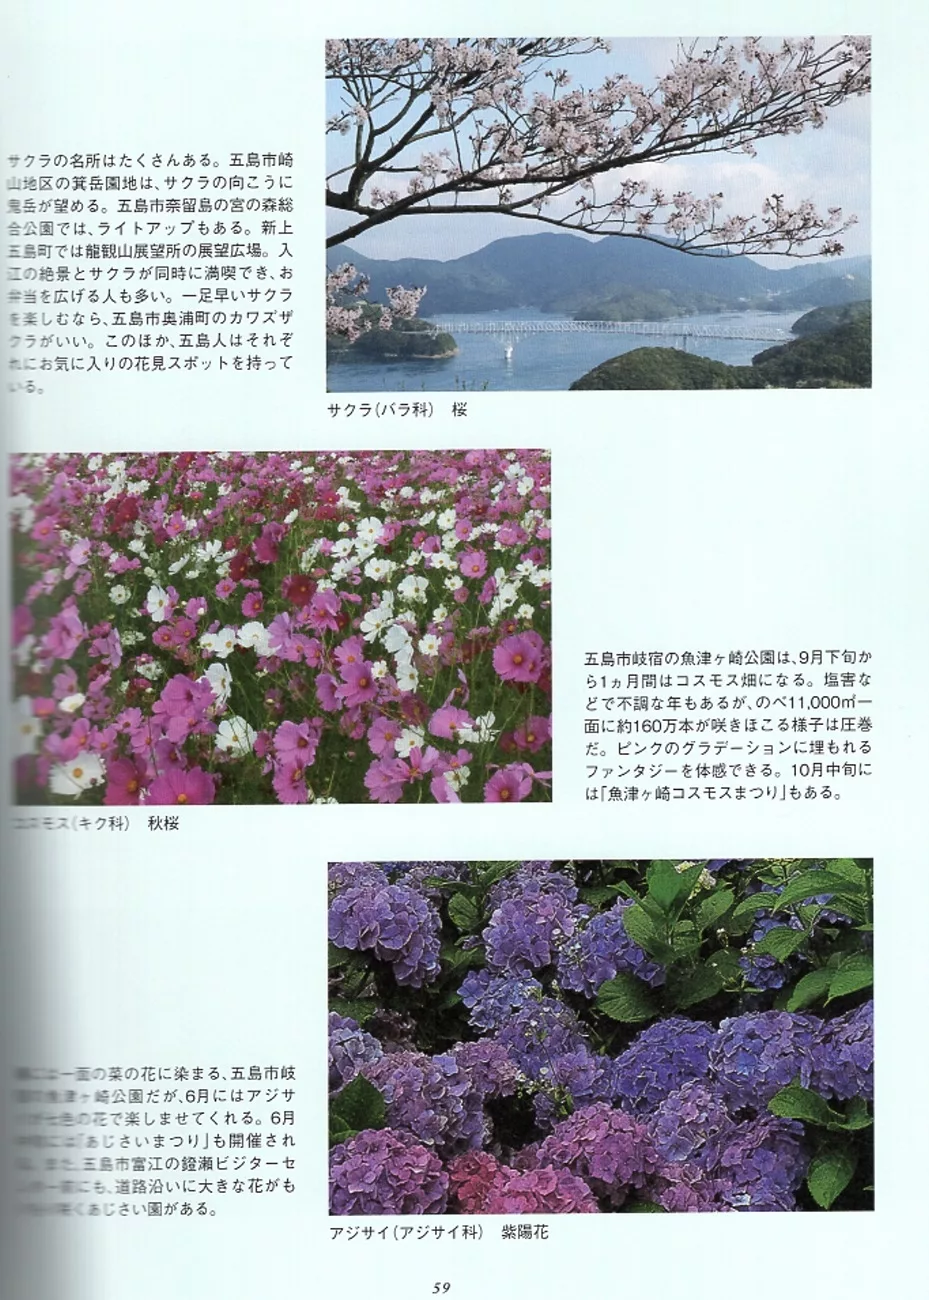 五島的美麗花卉景緻